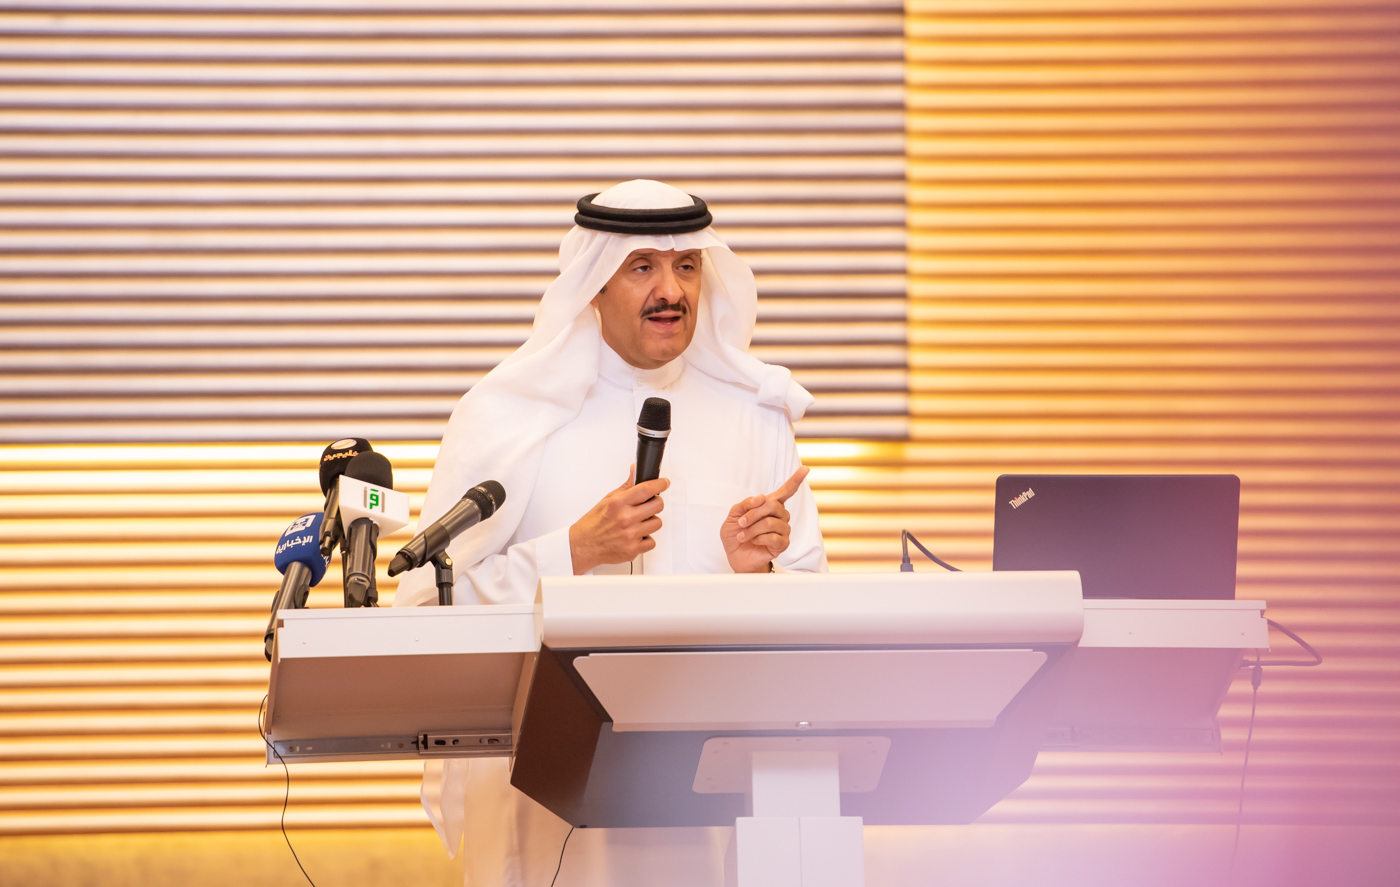 سلطان بن سلمان : تجاوزنا أهداف استراتيجية السياحة بمراحل بفضل وعي المواطن